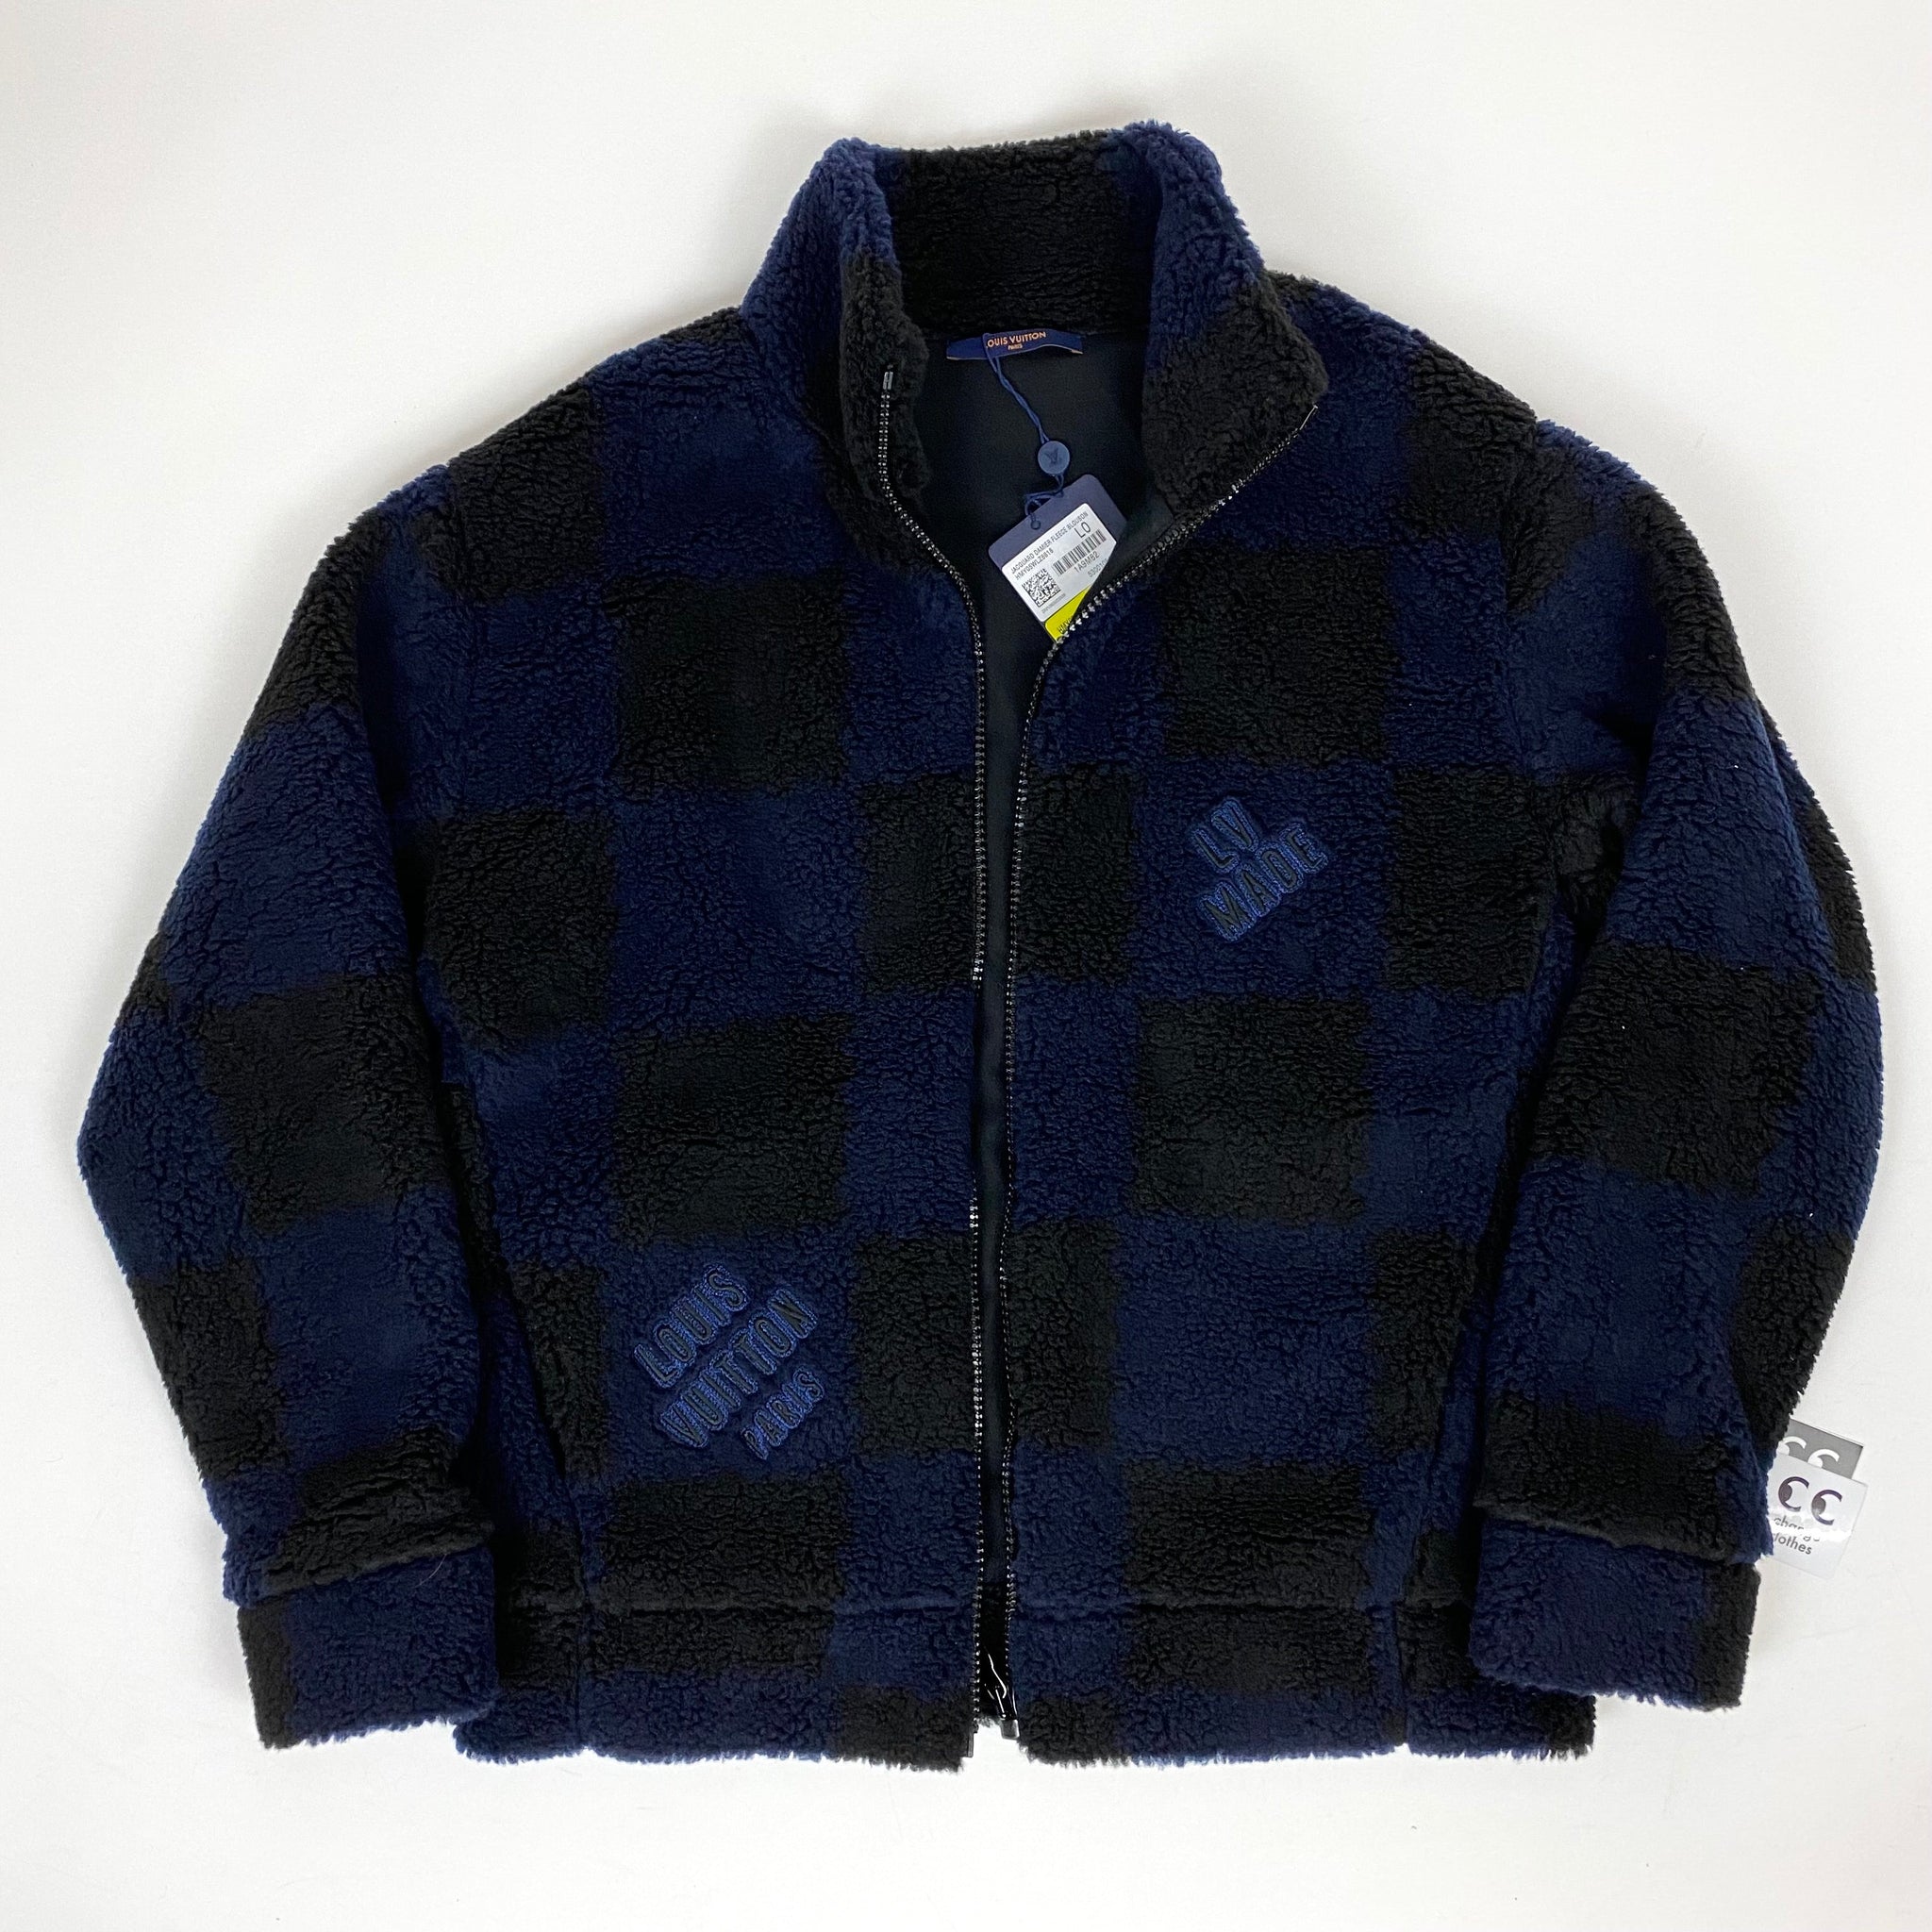 Louis Vuitton Nigo Human Made Checkered Fleece